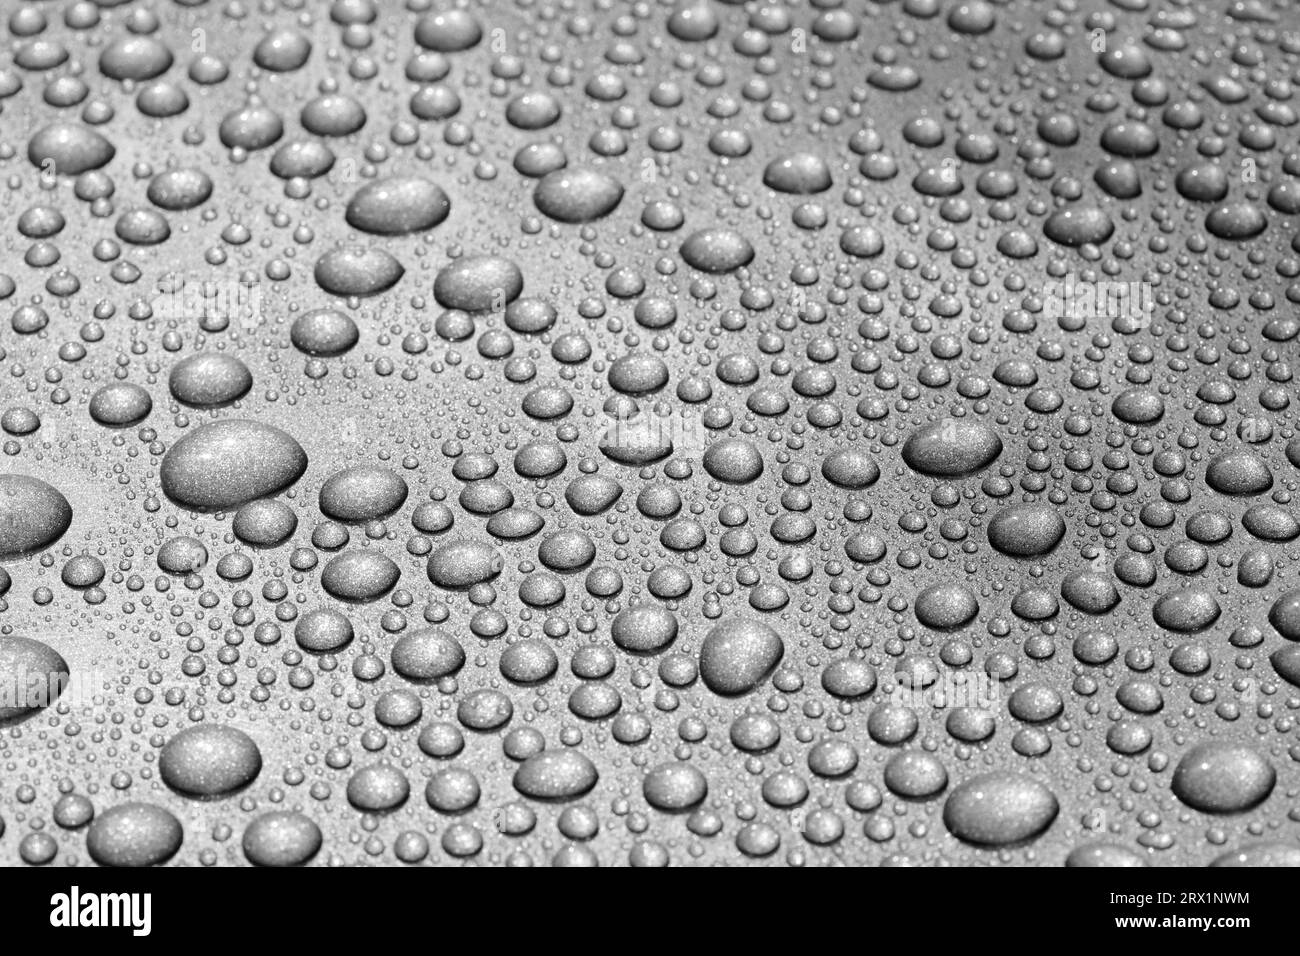 Goutte d'eau dessin Banque d'images noir et blanc - Alamy